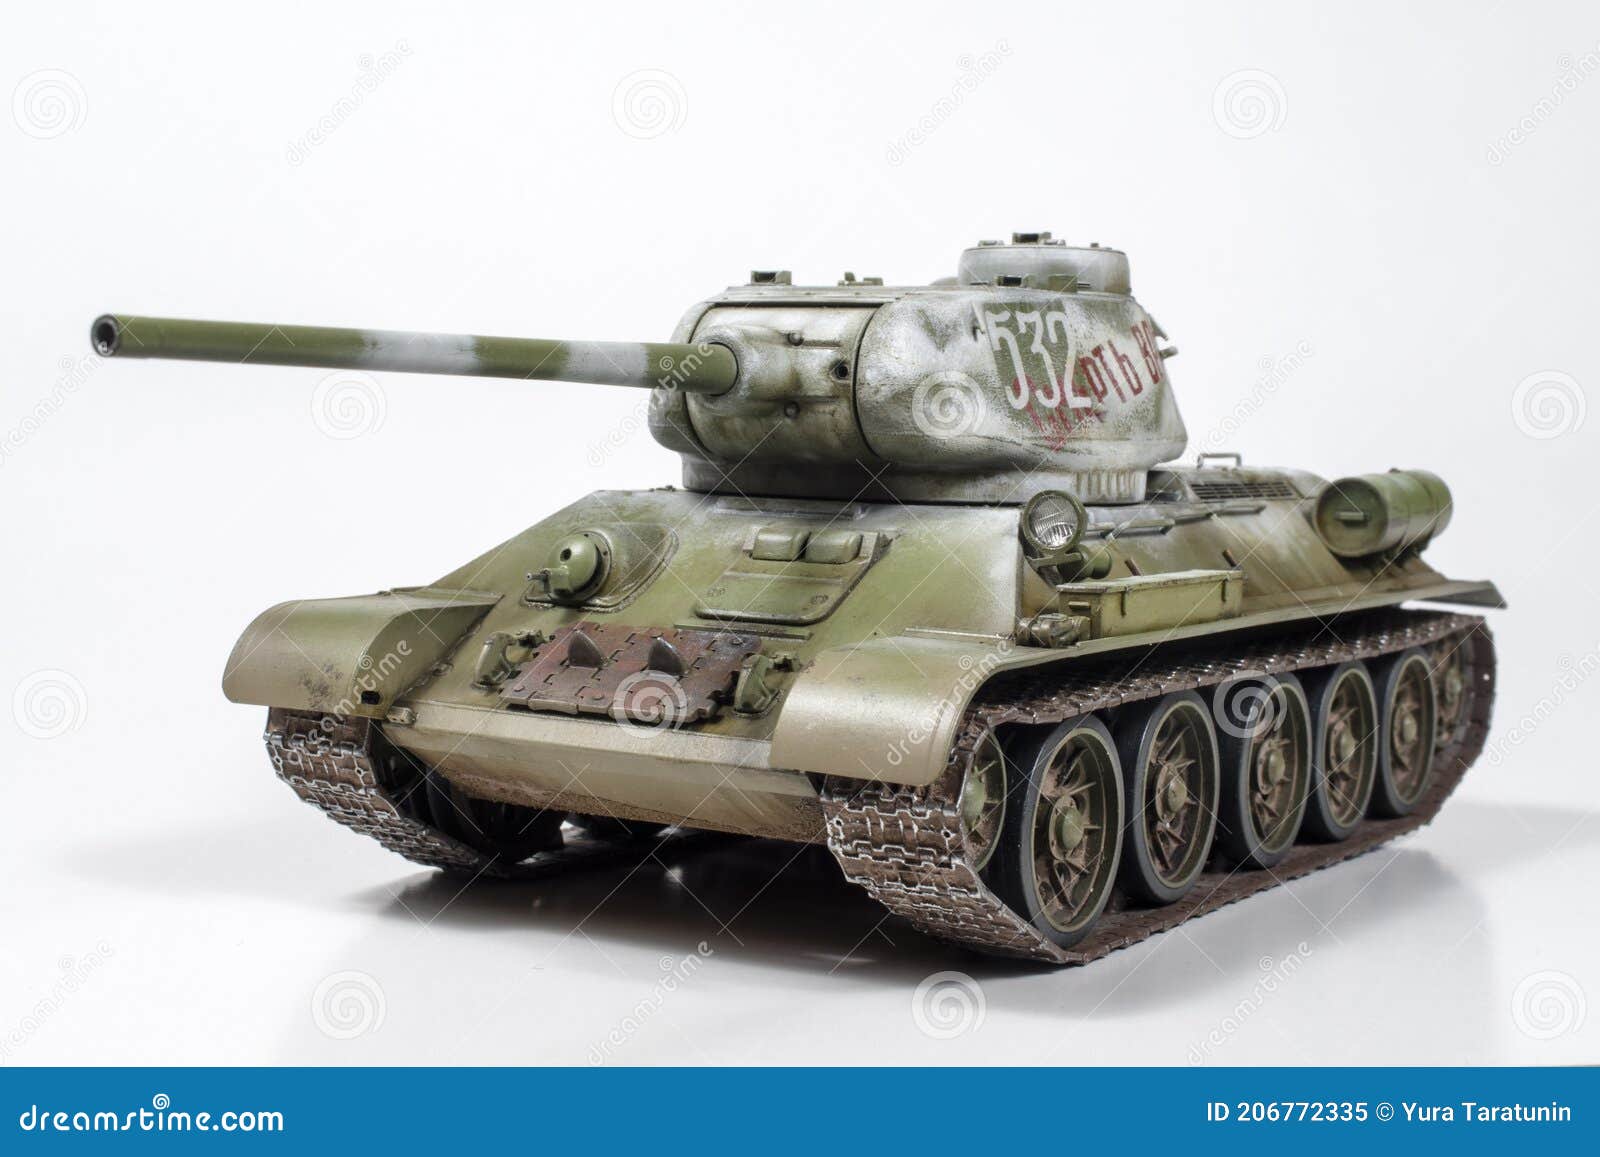 applaus Stijgen Renovatie Model T 34 Tank Stock Illustrations – 13 Model T 34 Tank Stock  Illustrations, Vectors & Clipart - Dreamstime